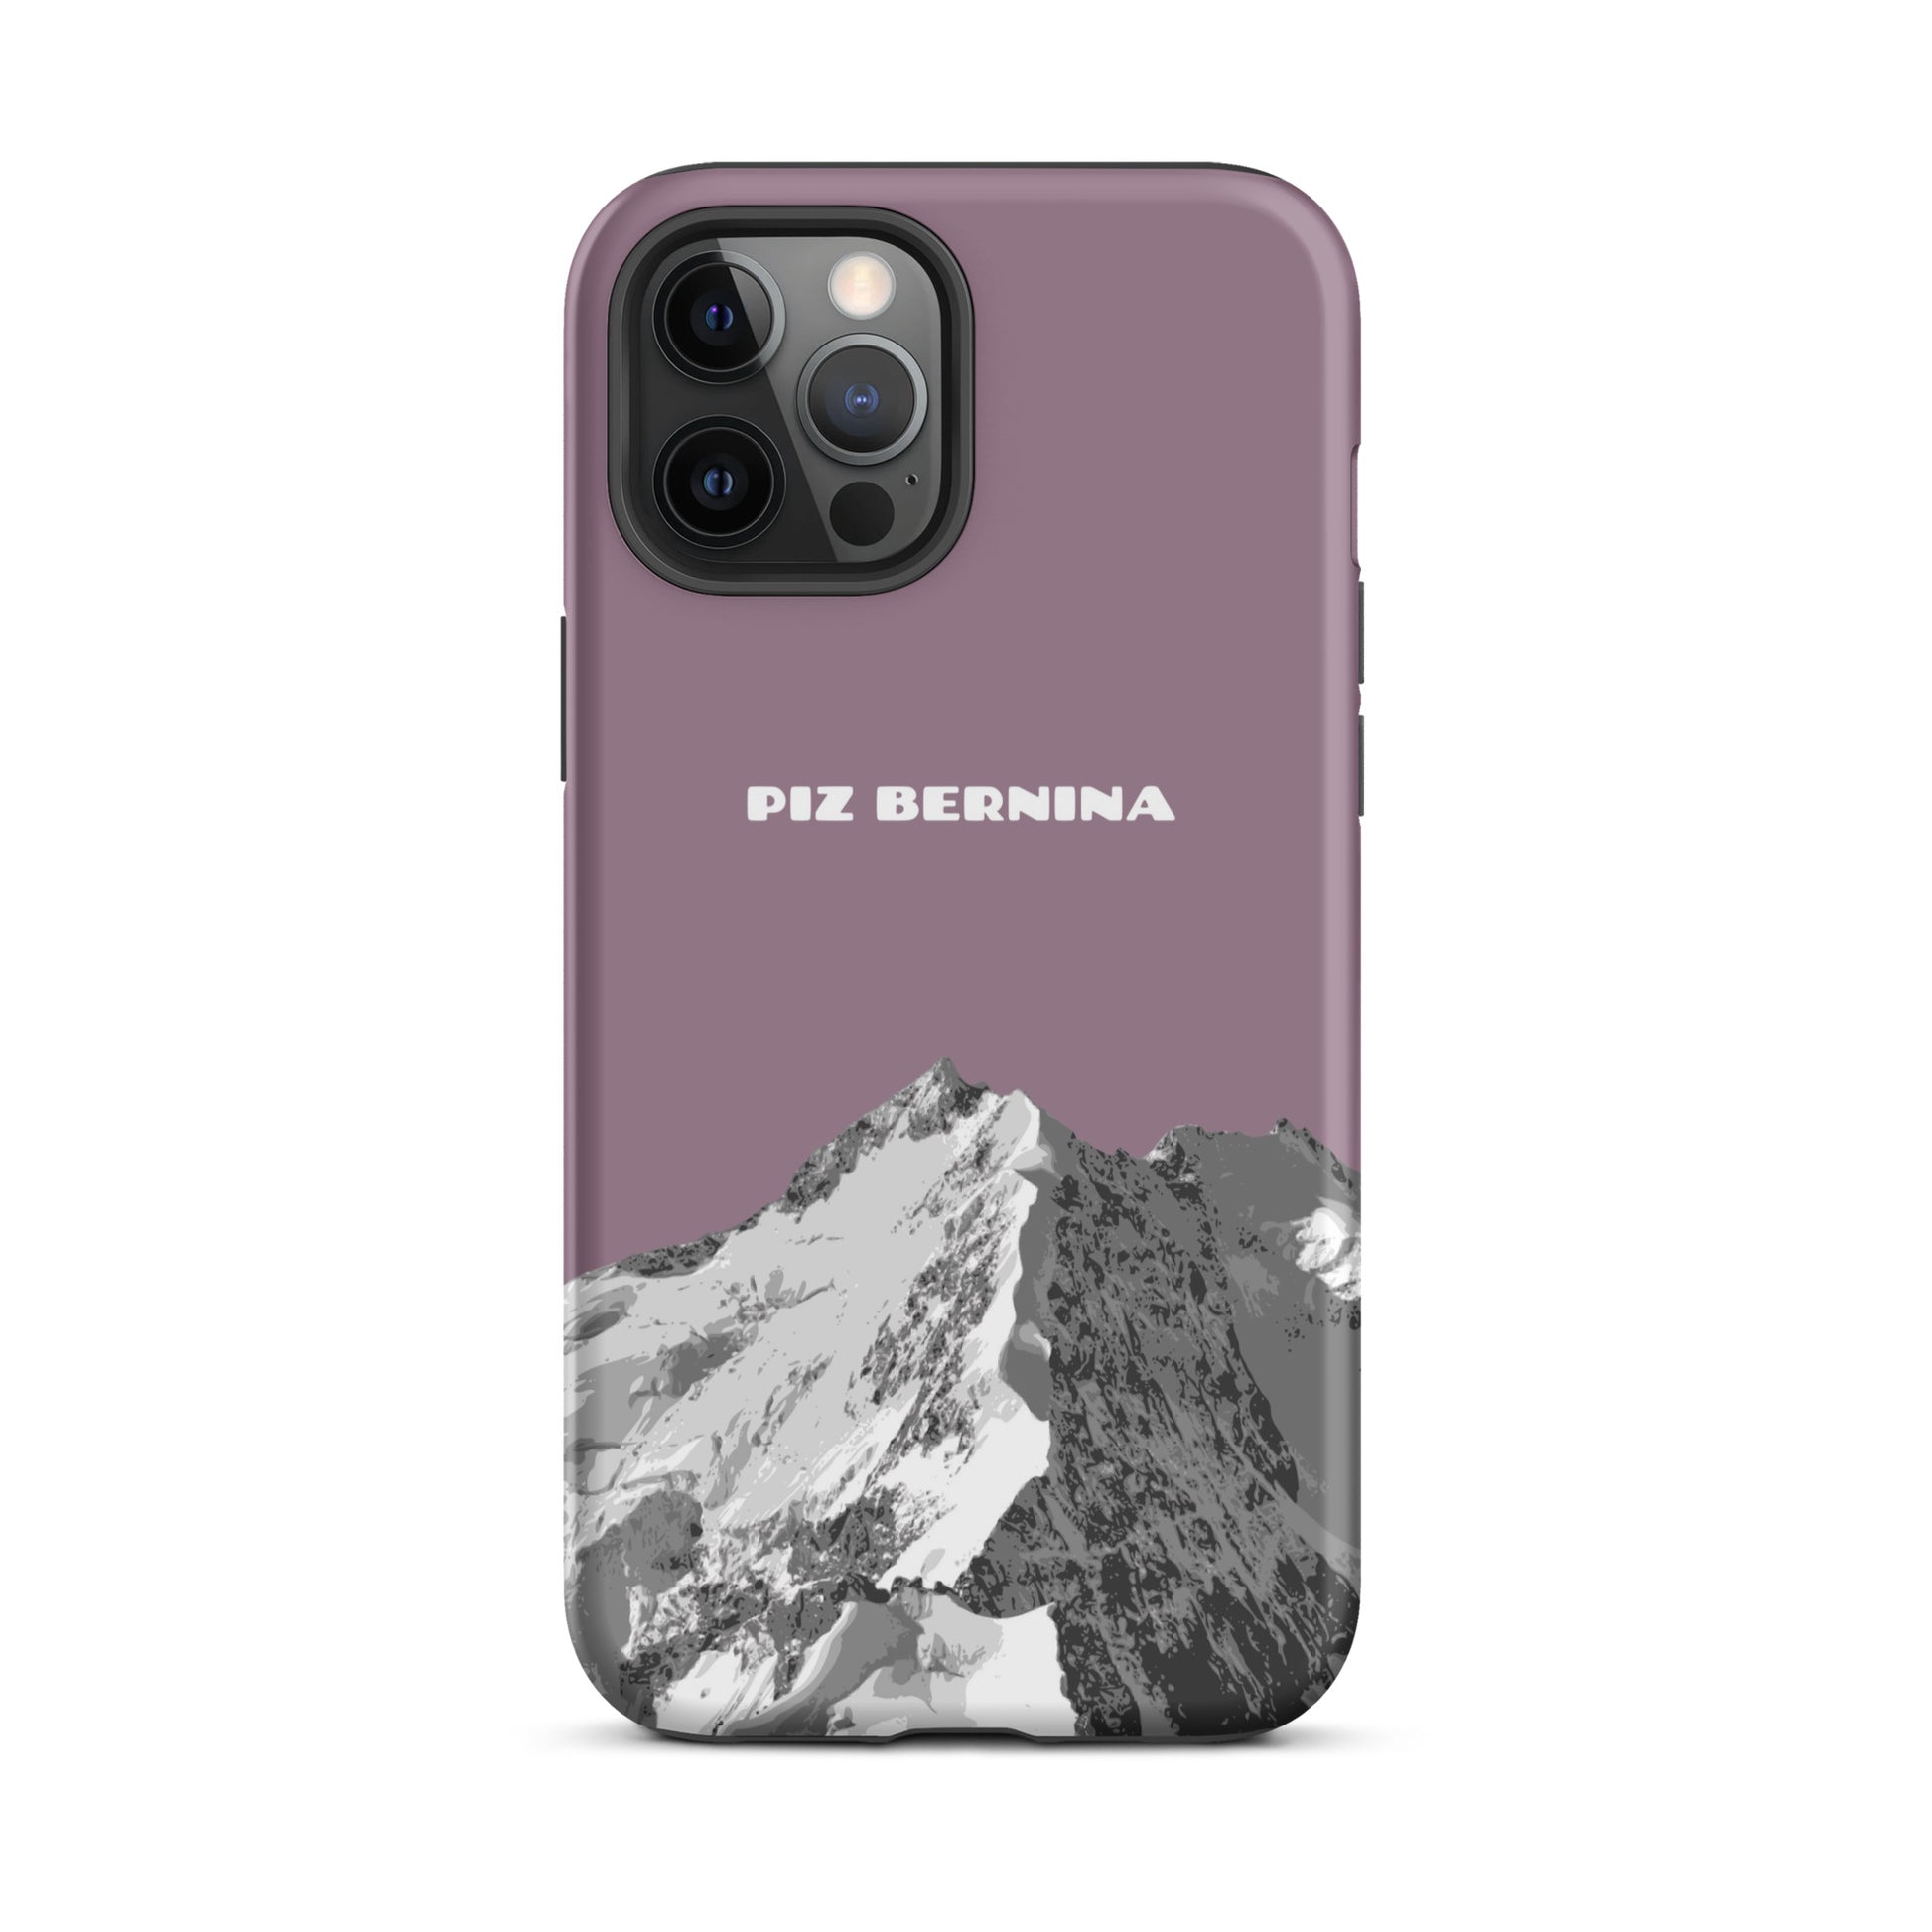 Hülle für das iPhone 12 Pro Max von Apple in der Farbe Pastellviolett, dass den Piz Bernina in Graubünden zeigt.